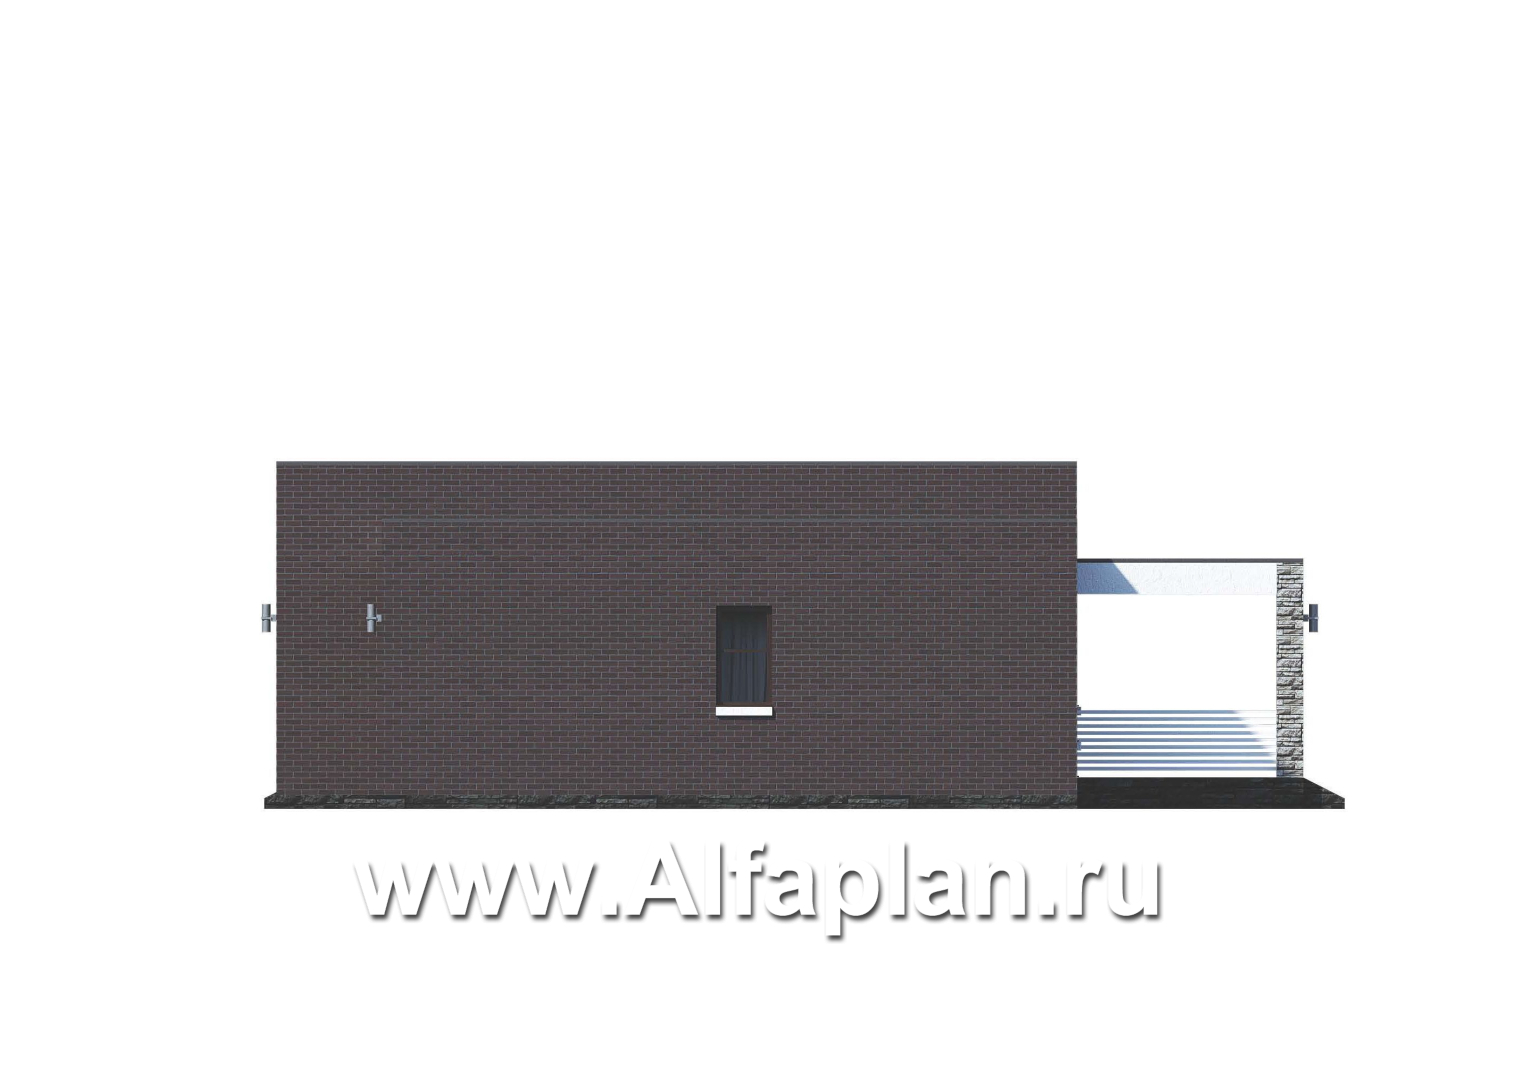 Проекты домов Альфаплан - «Магнолия» — плоскокровельный коттедж с удобной планировкой - изображение фасада №2